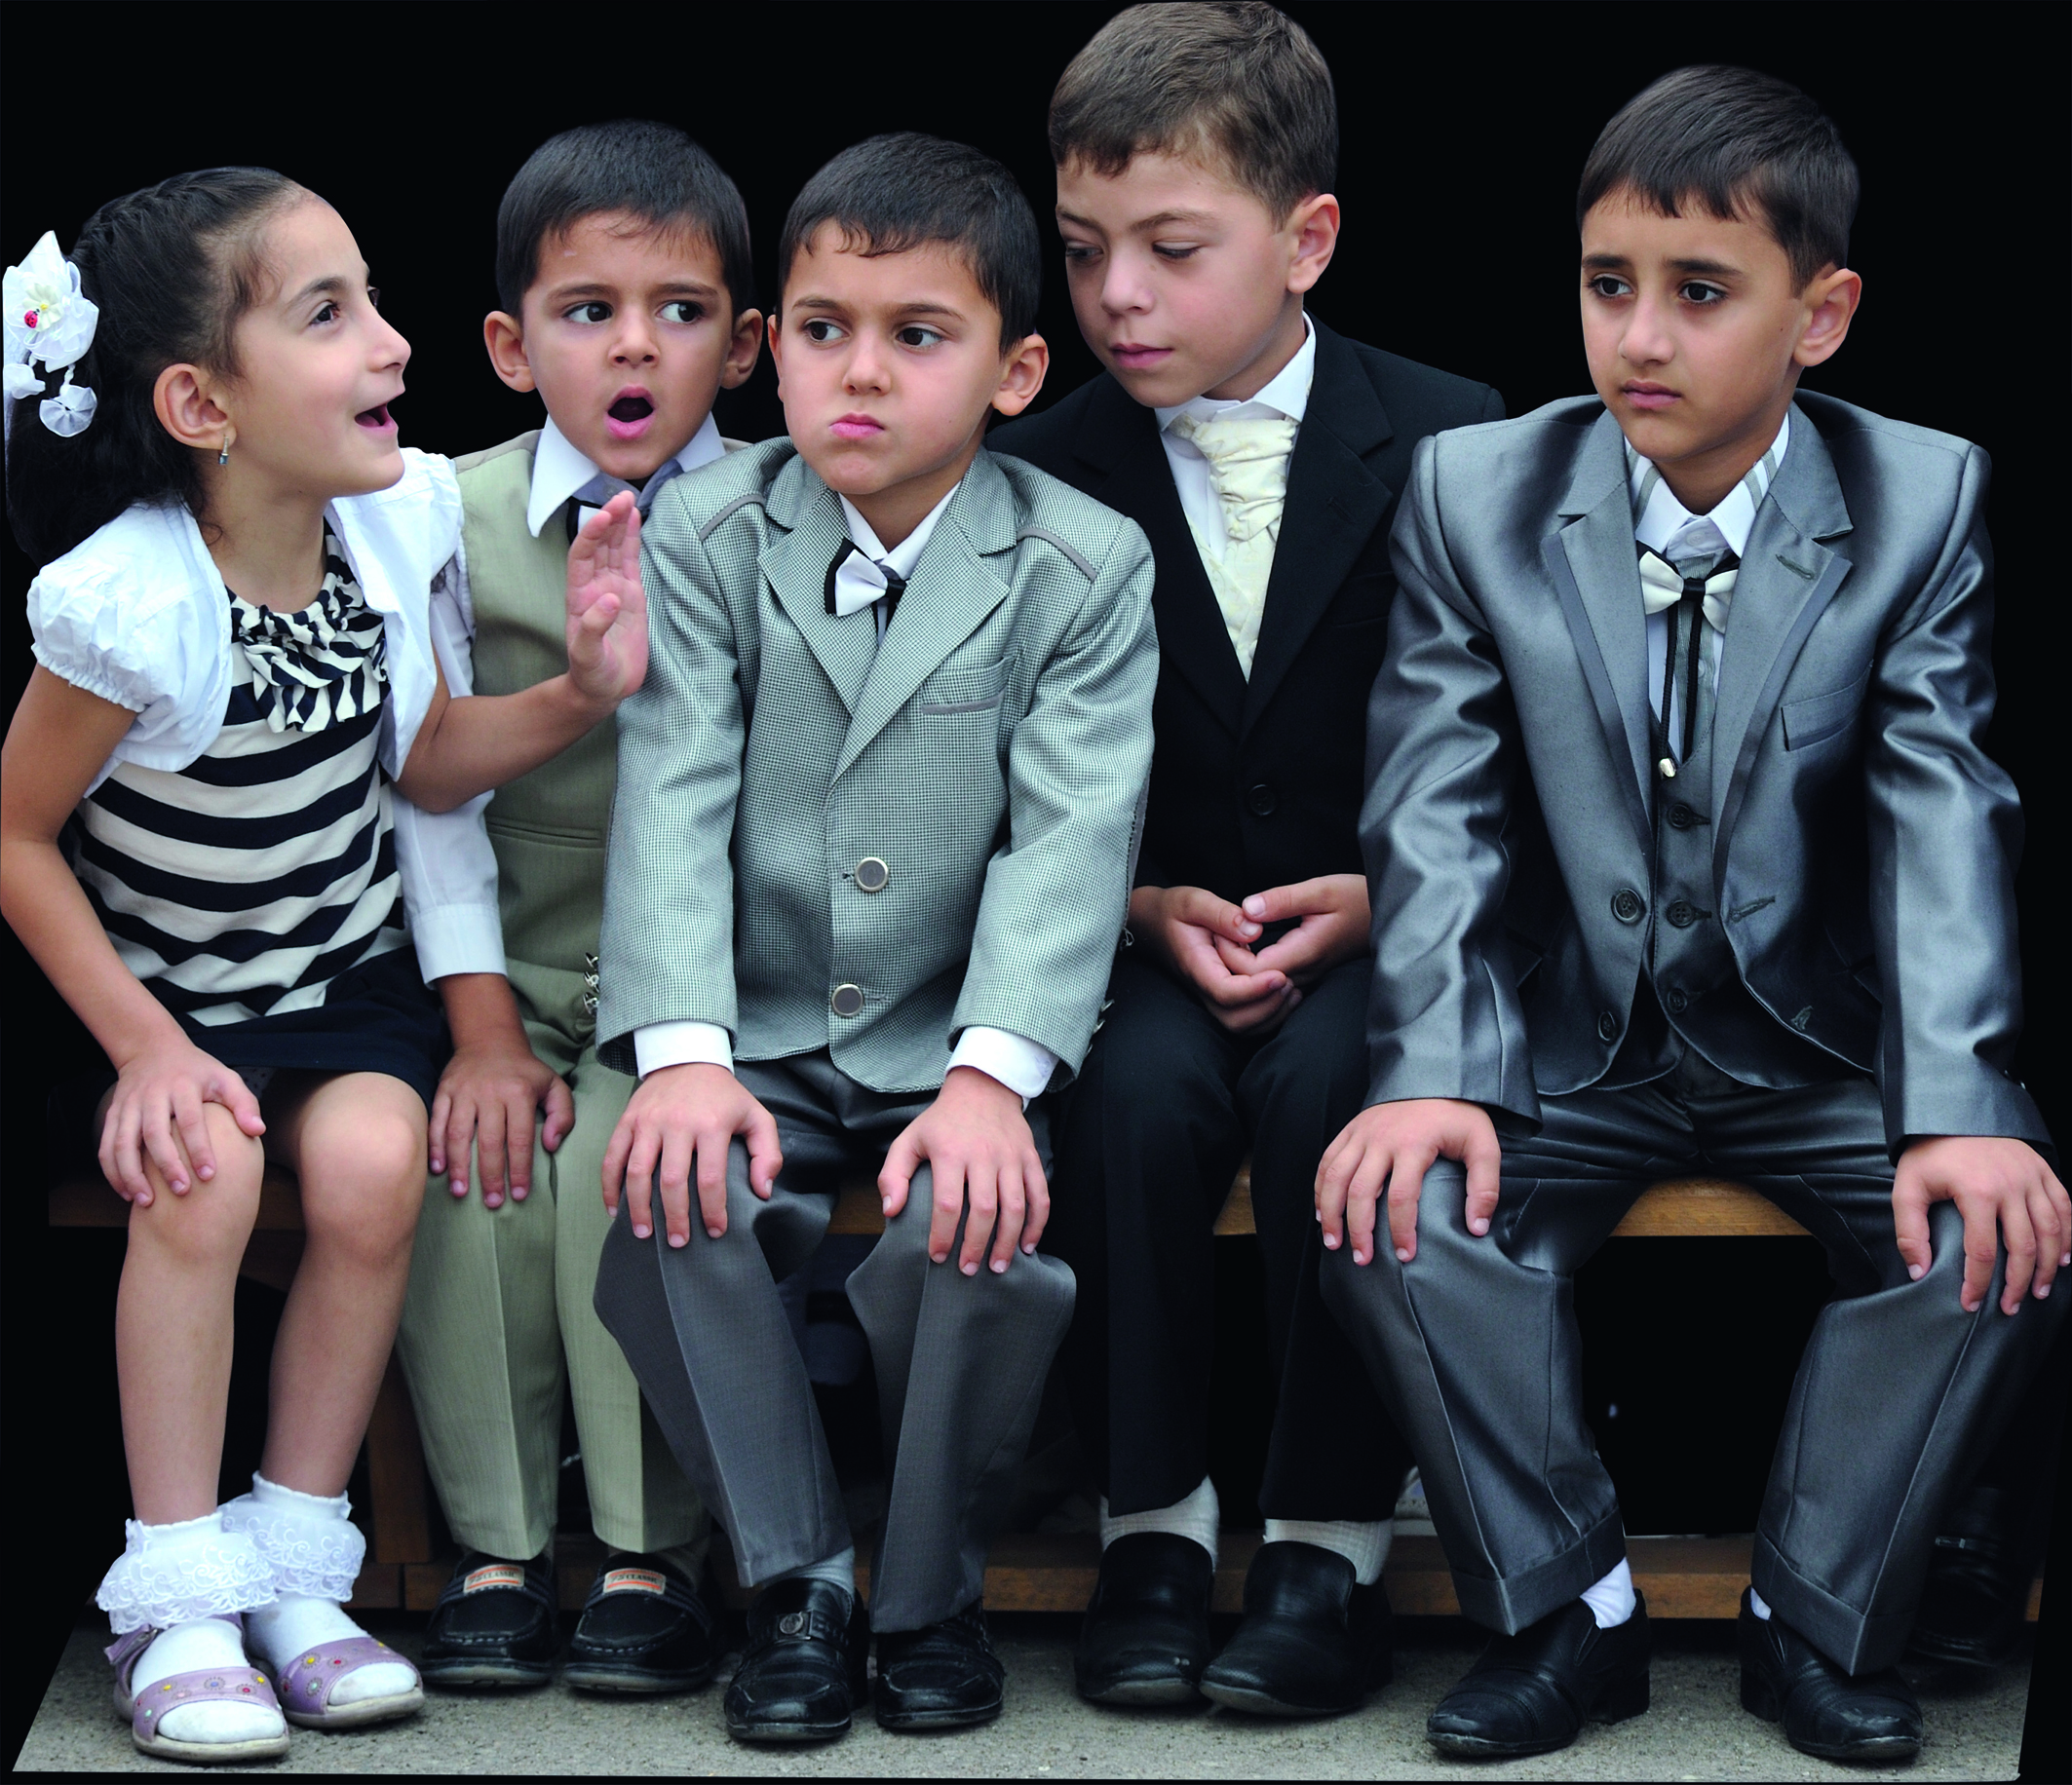 Primo giorno di scuola: i bambini vestiti a festa © graziella vigo world copyright